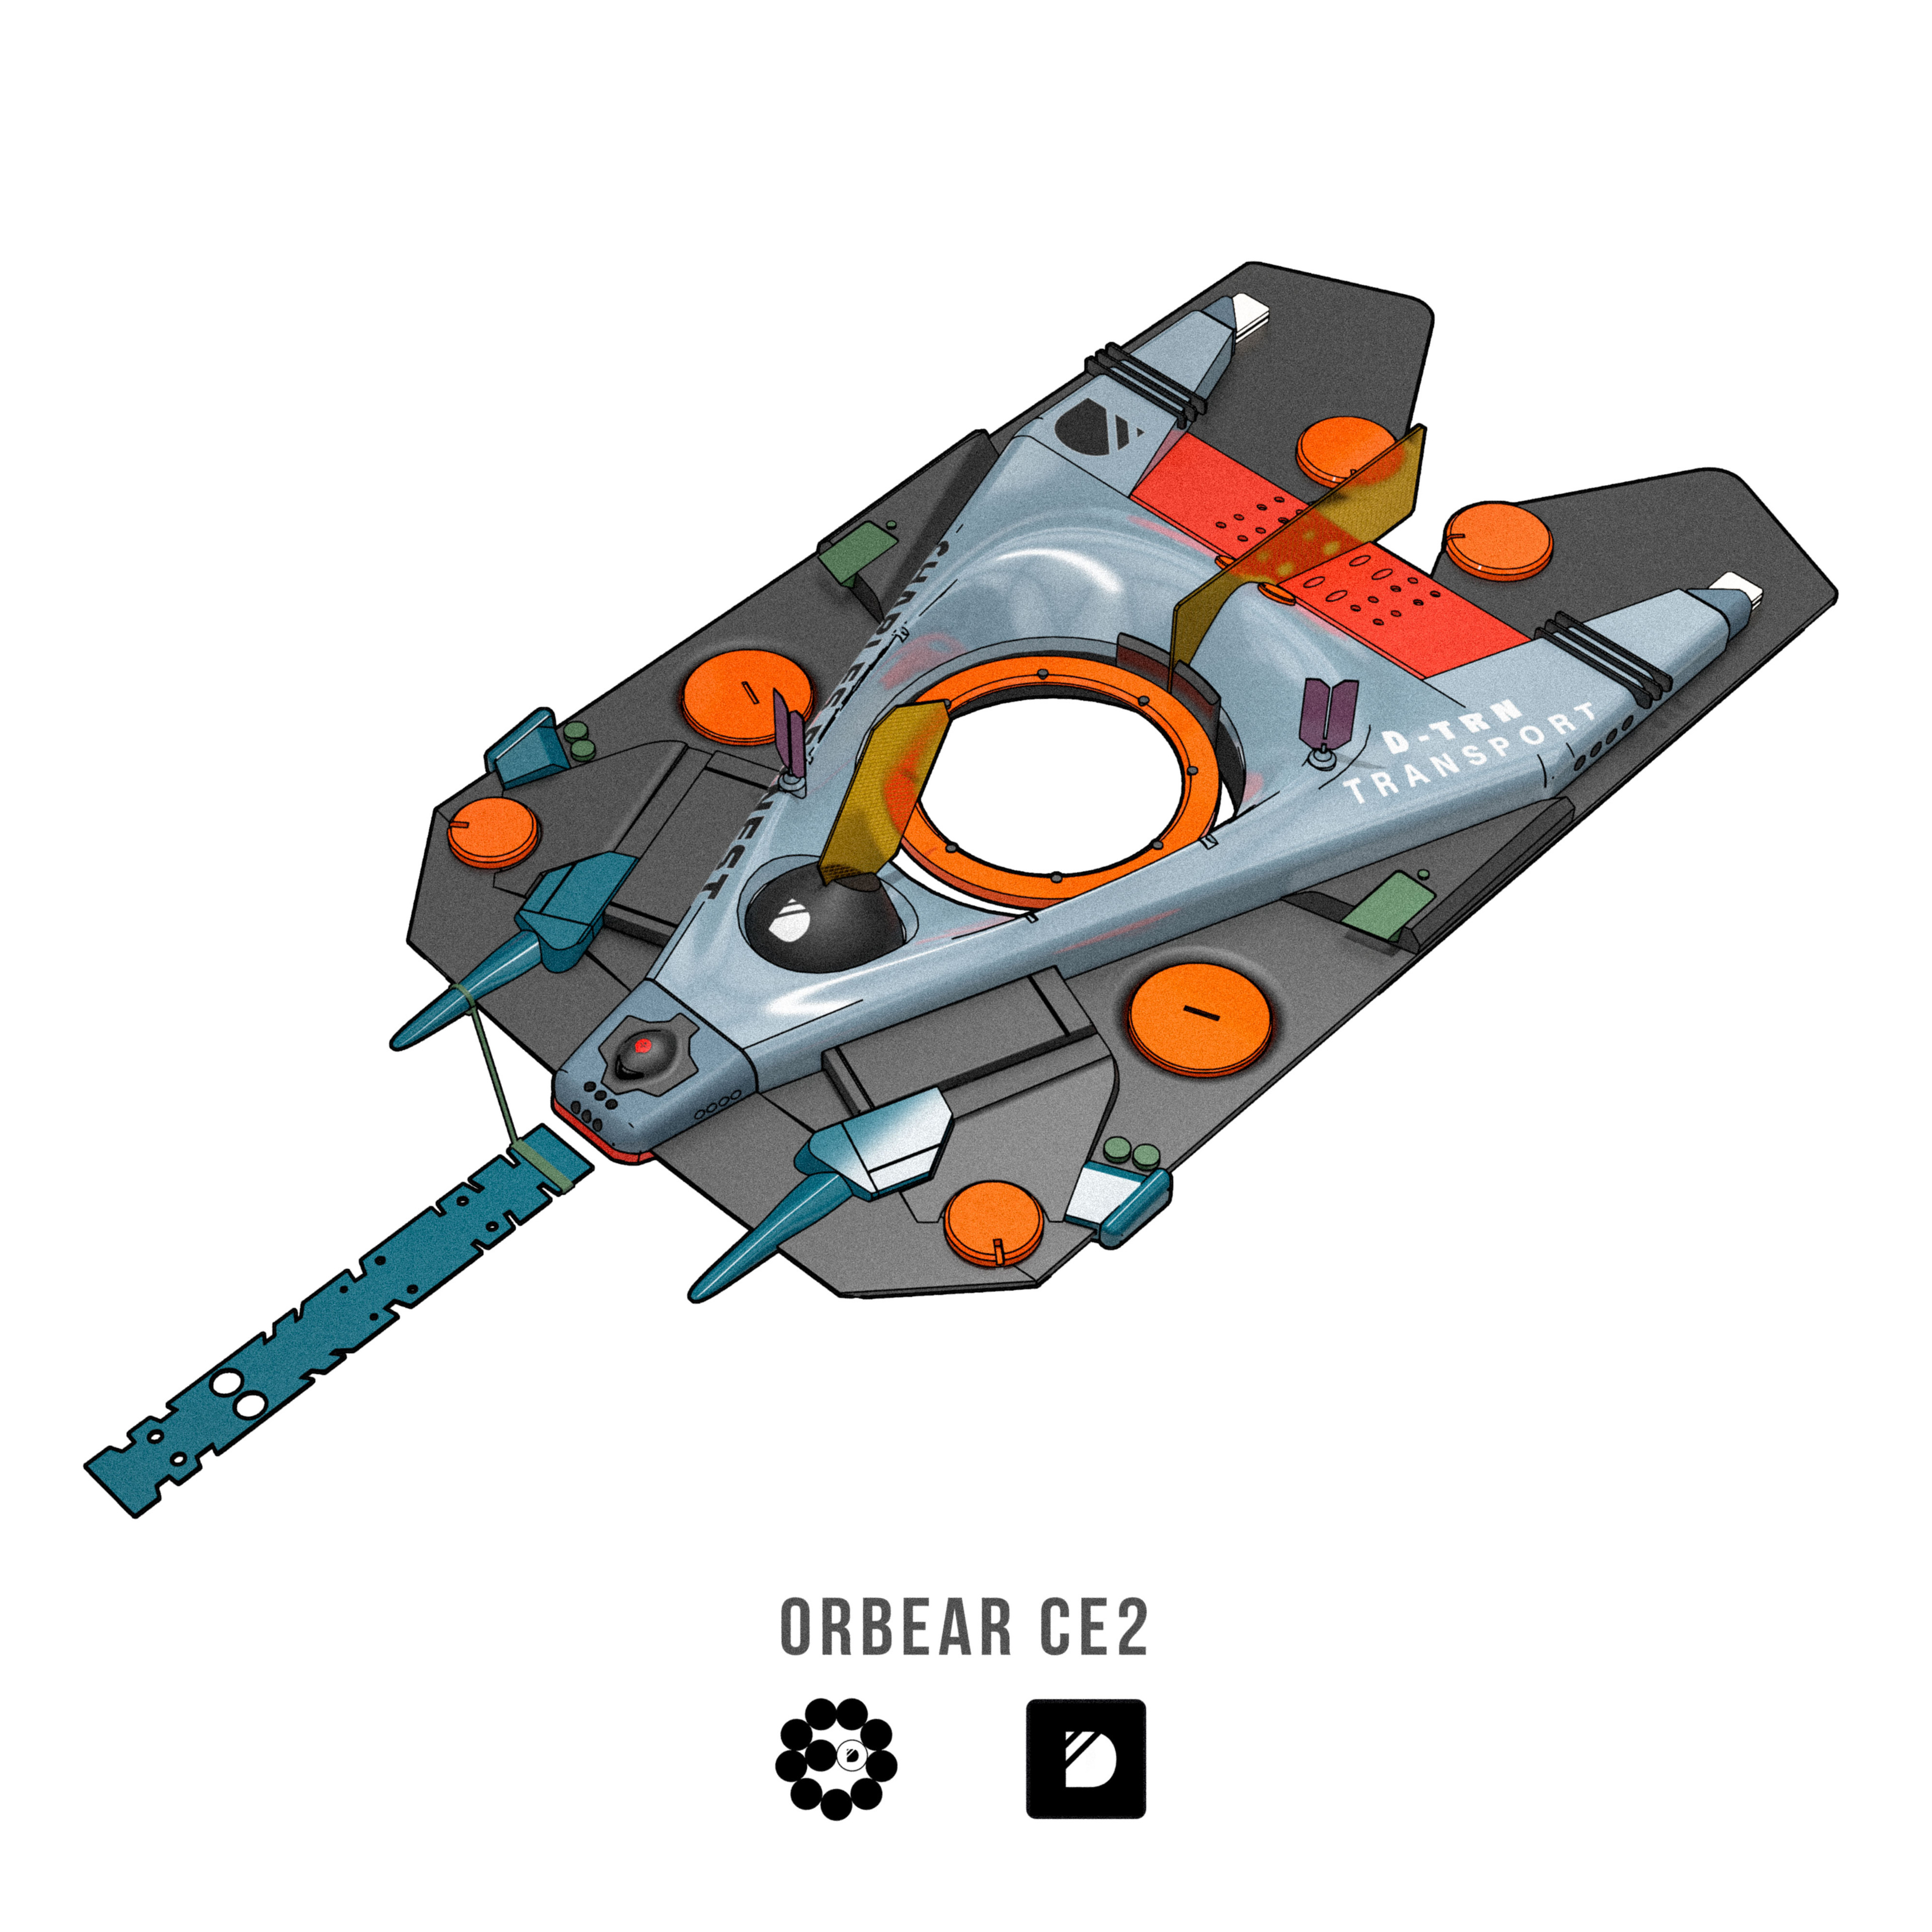 Meet the ORBEAR CE2